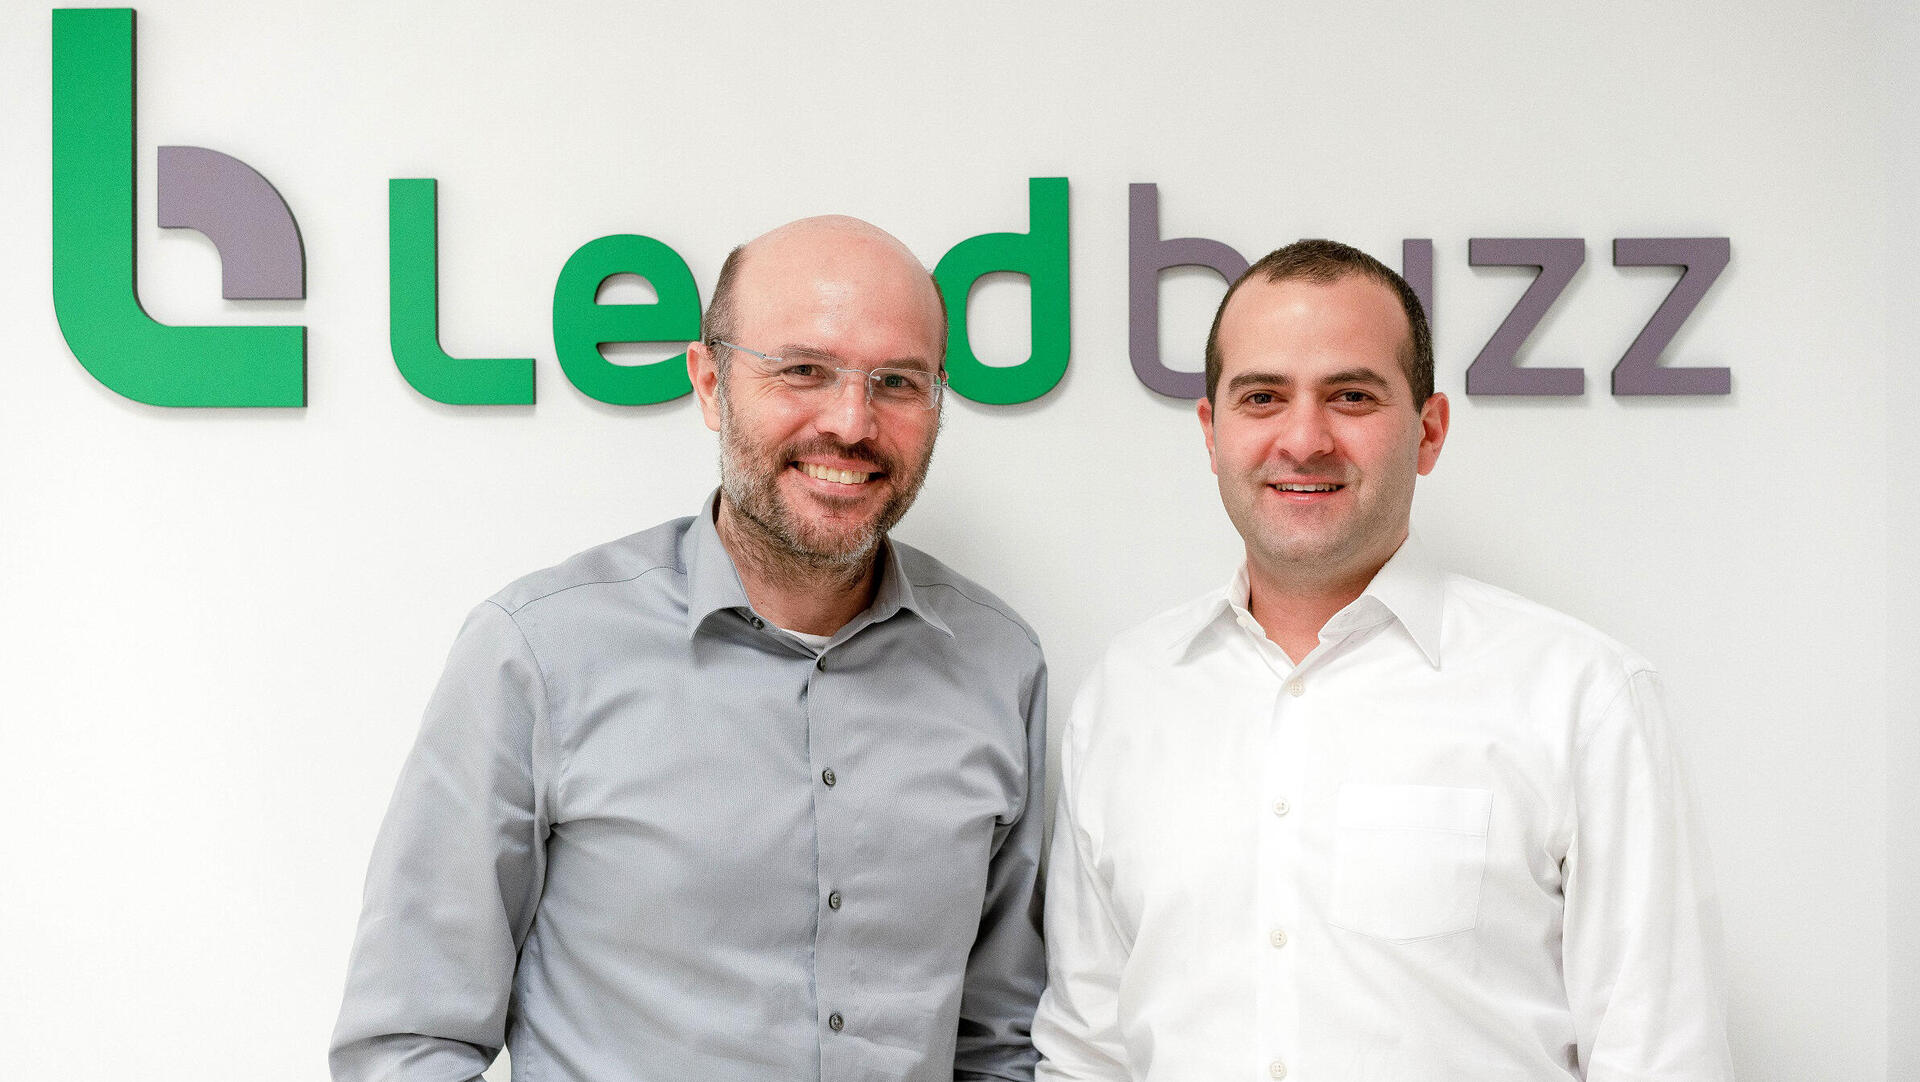 מייסדי Lendbuzz לנדבאזז אמיתי קלמר ו ד"ר דן רביב